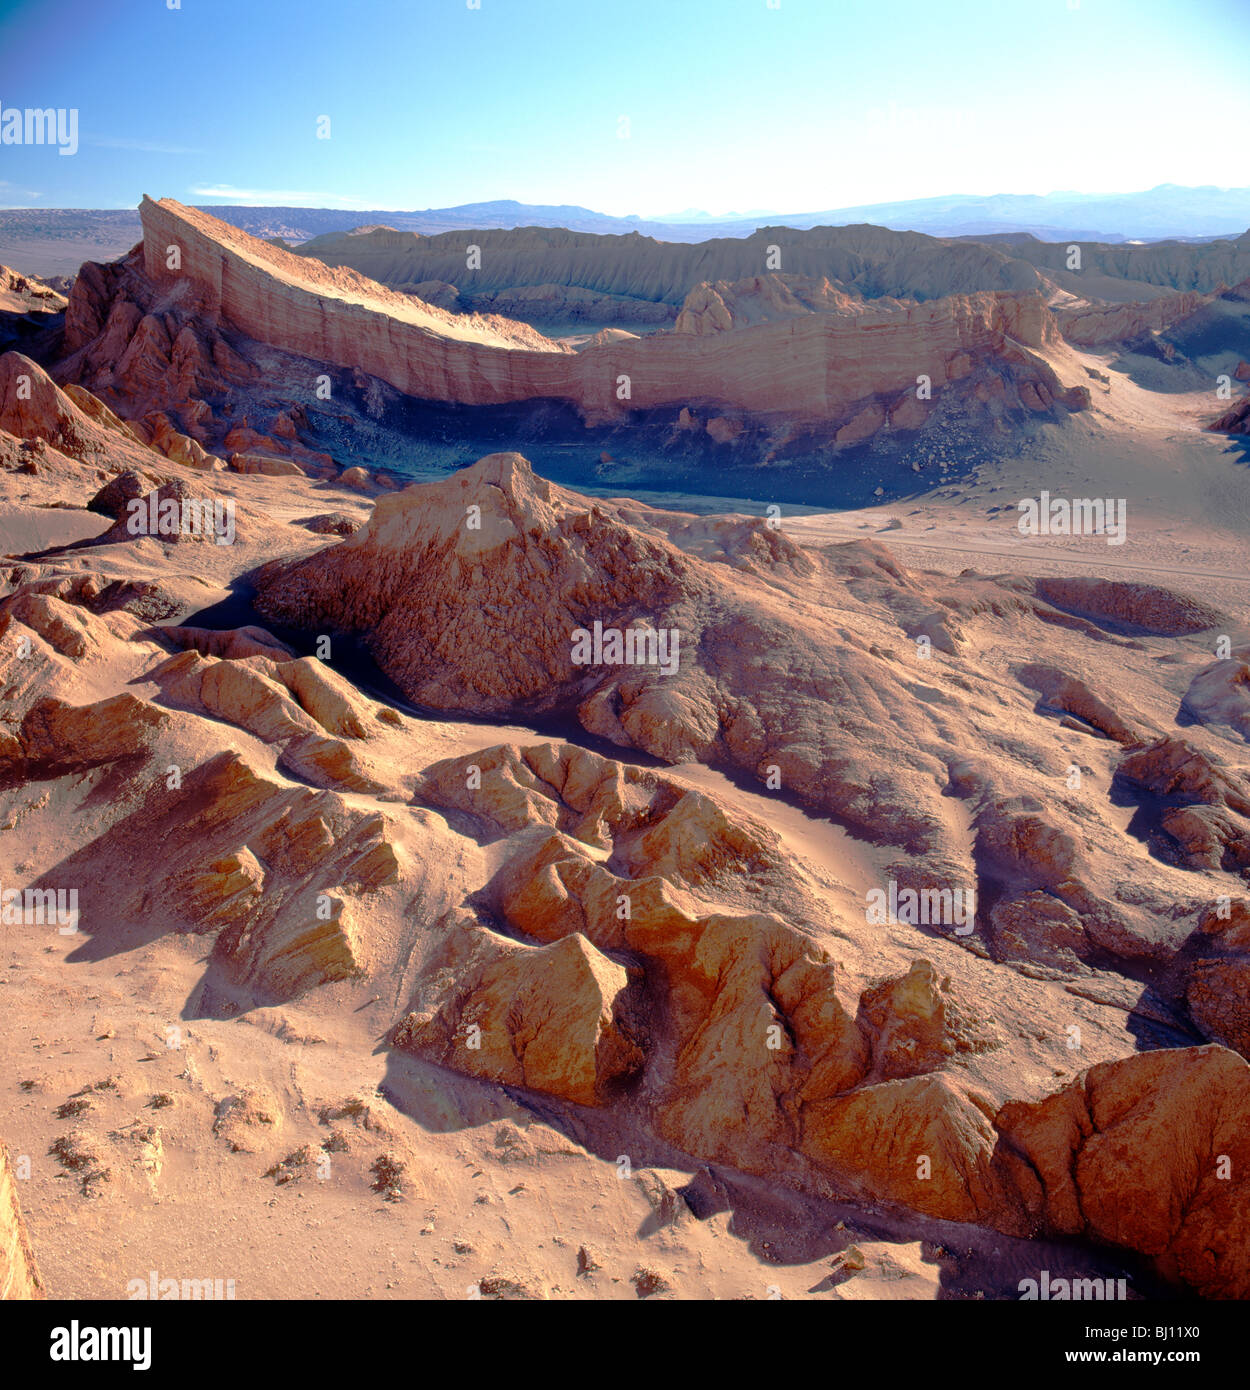 Tal des Mondes, Atacama-Wüste. Gips, Ton & Salz der Wüste Formationen, südöstlich von Calama, Nordchile Stockfoto